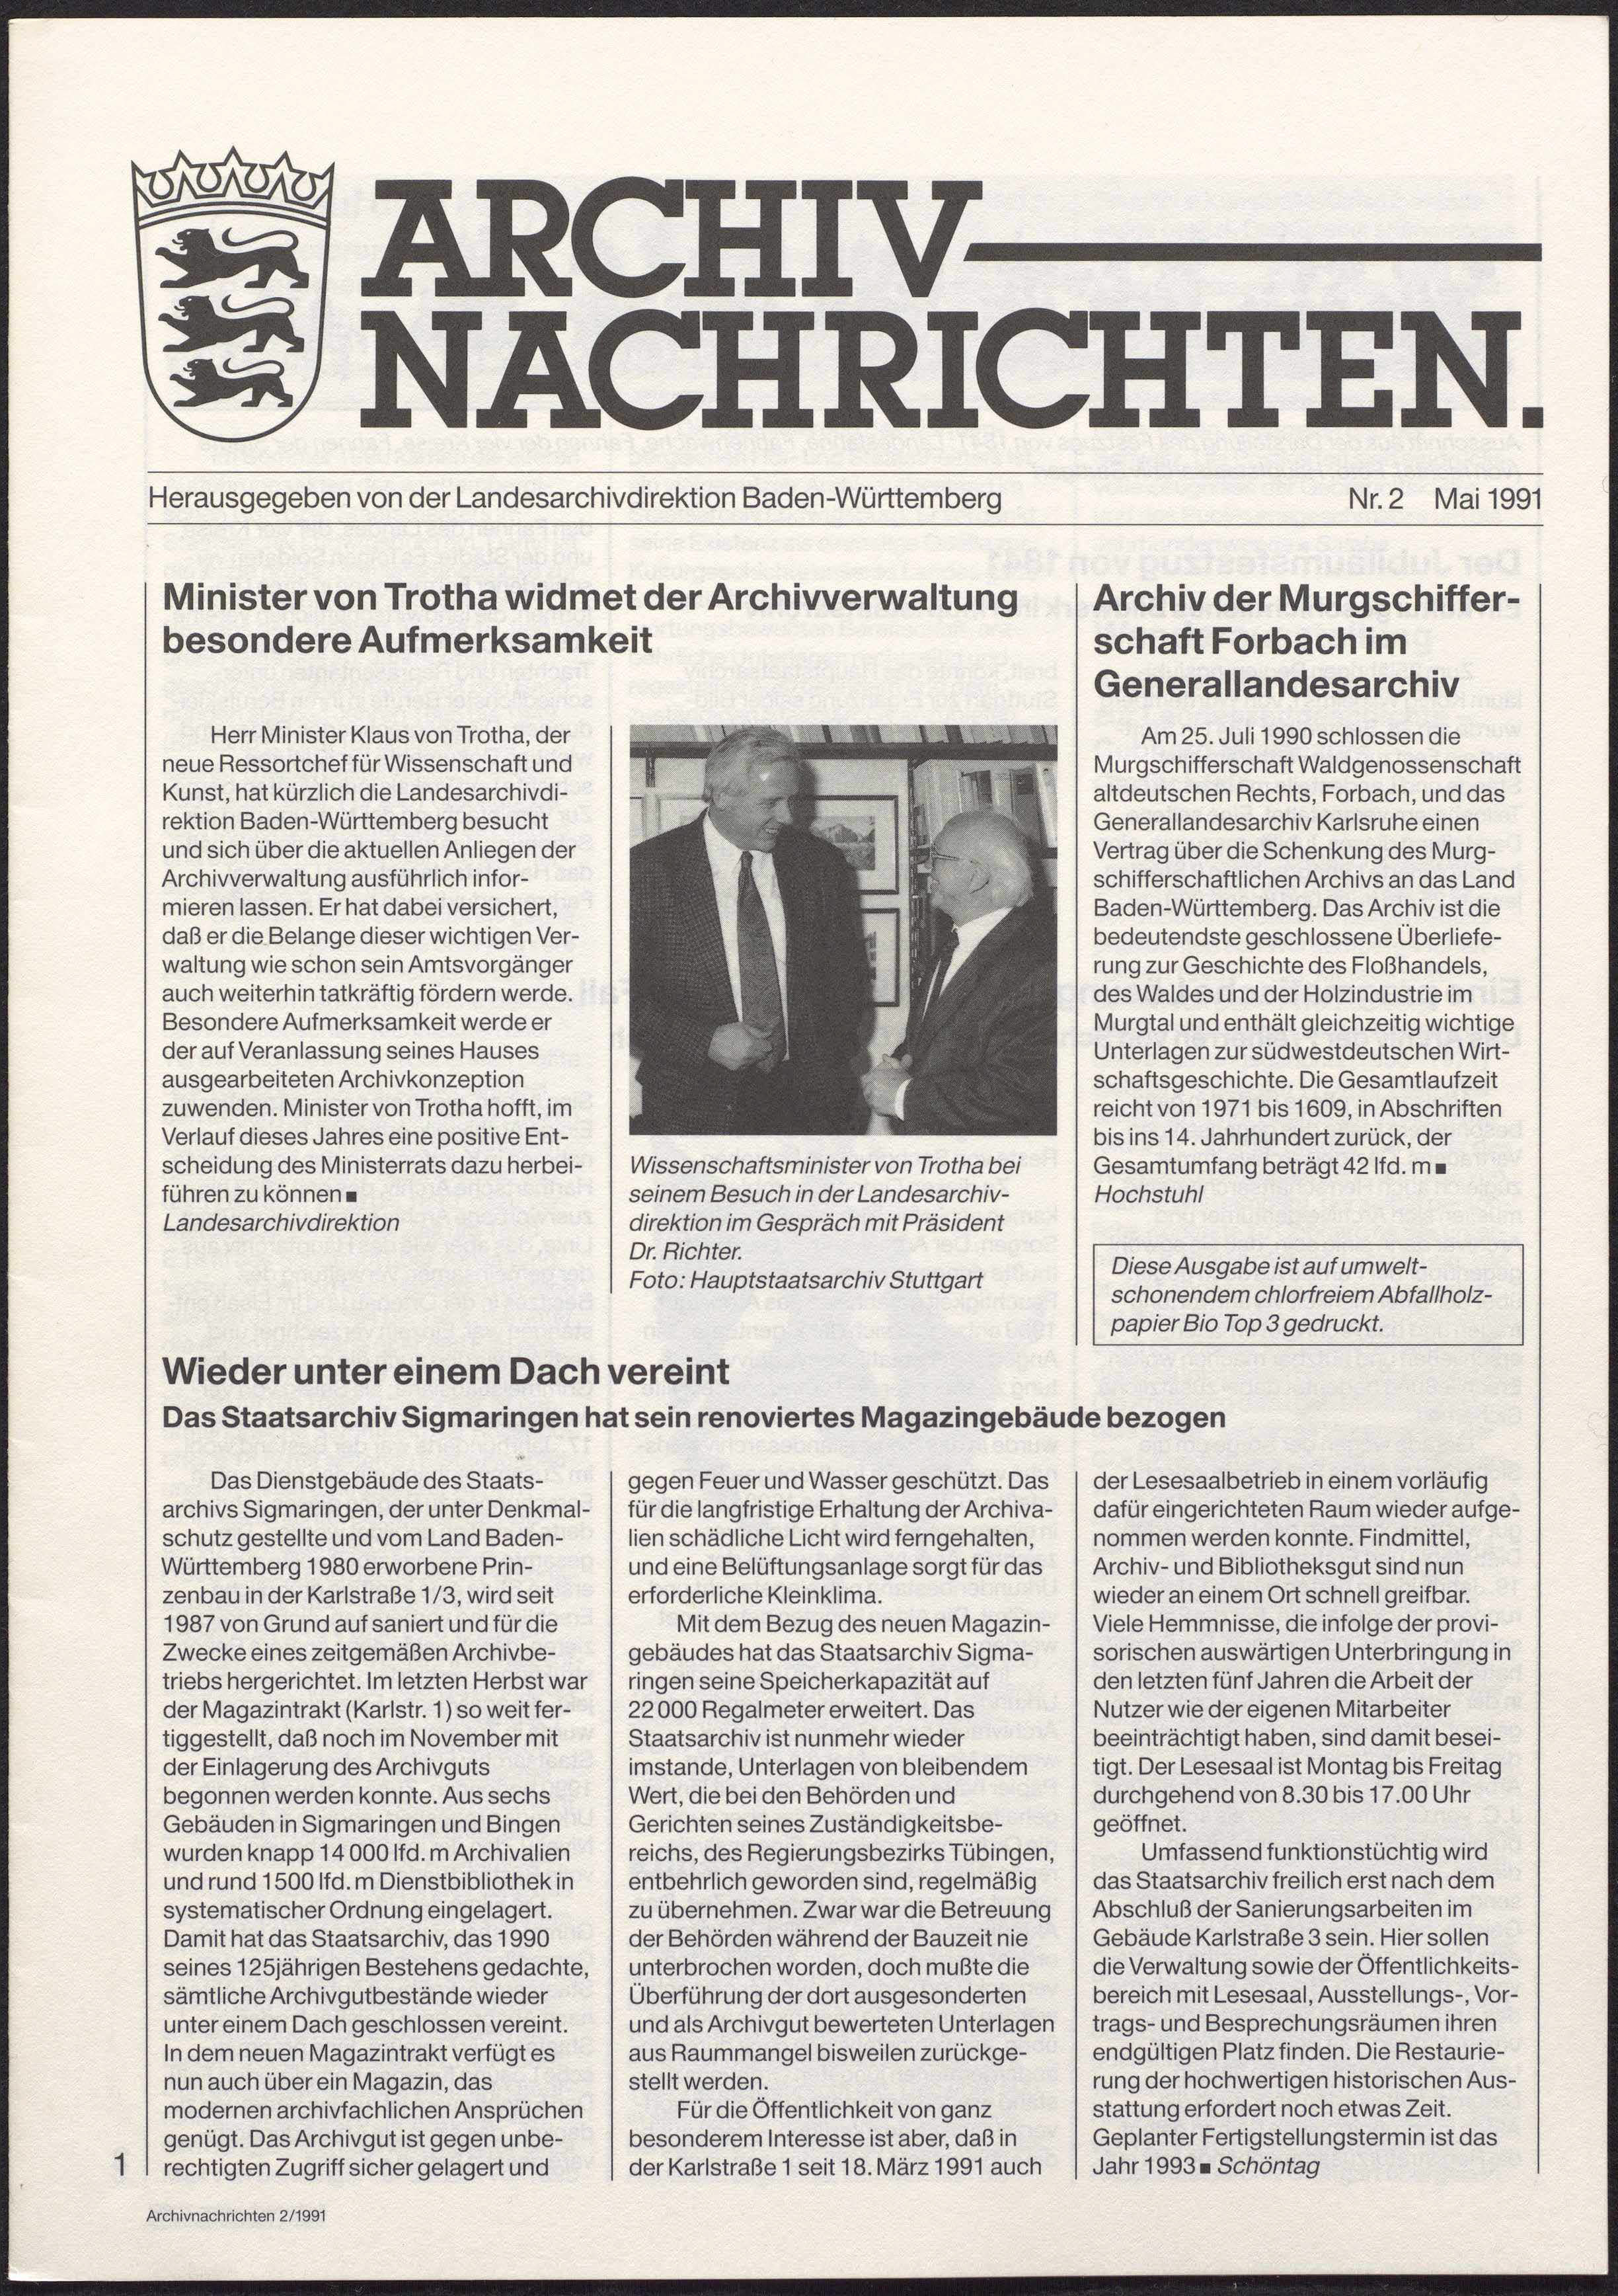                     Ansehen Nr. 2 (1991): Archivnachrichten
                